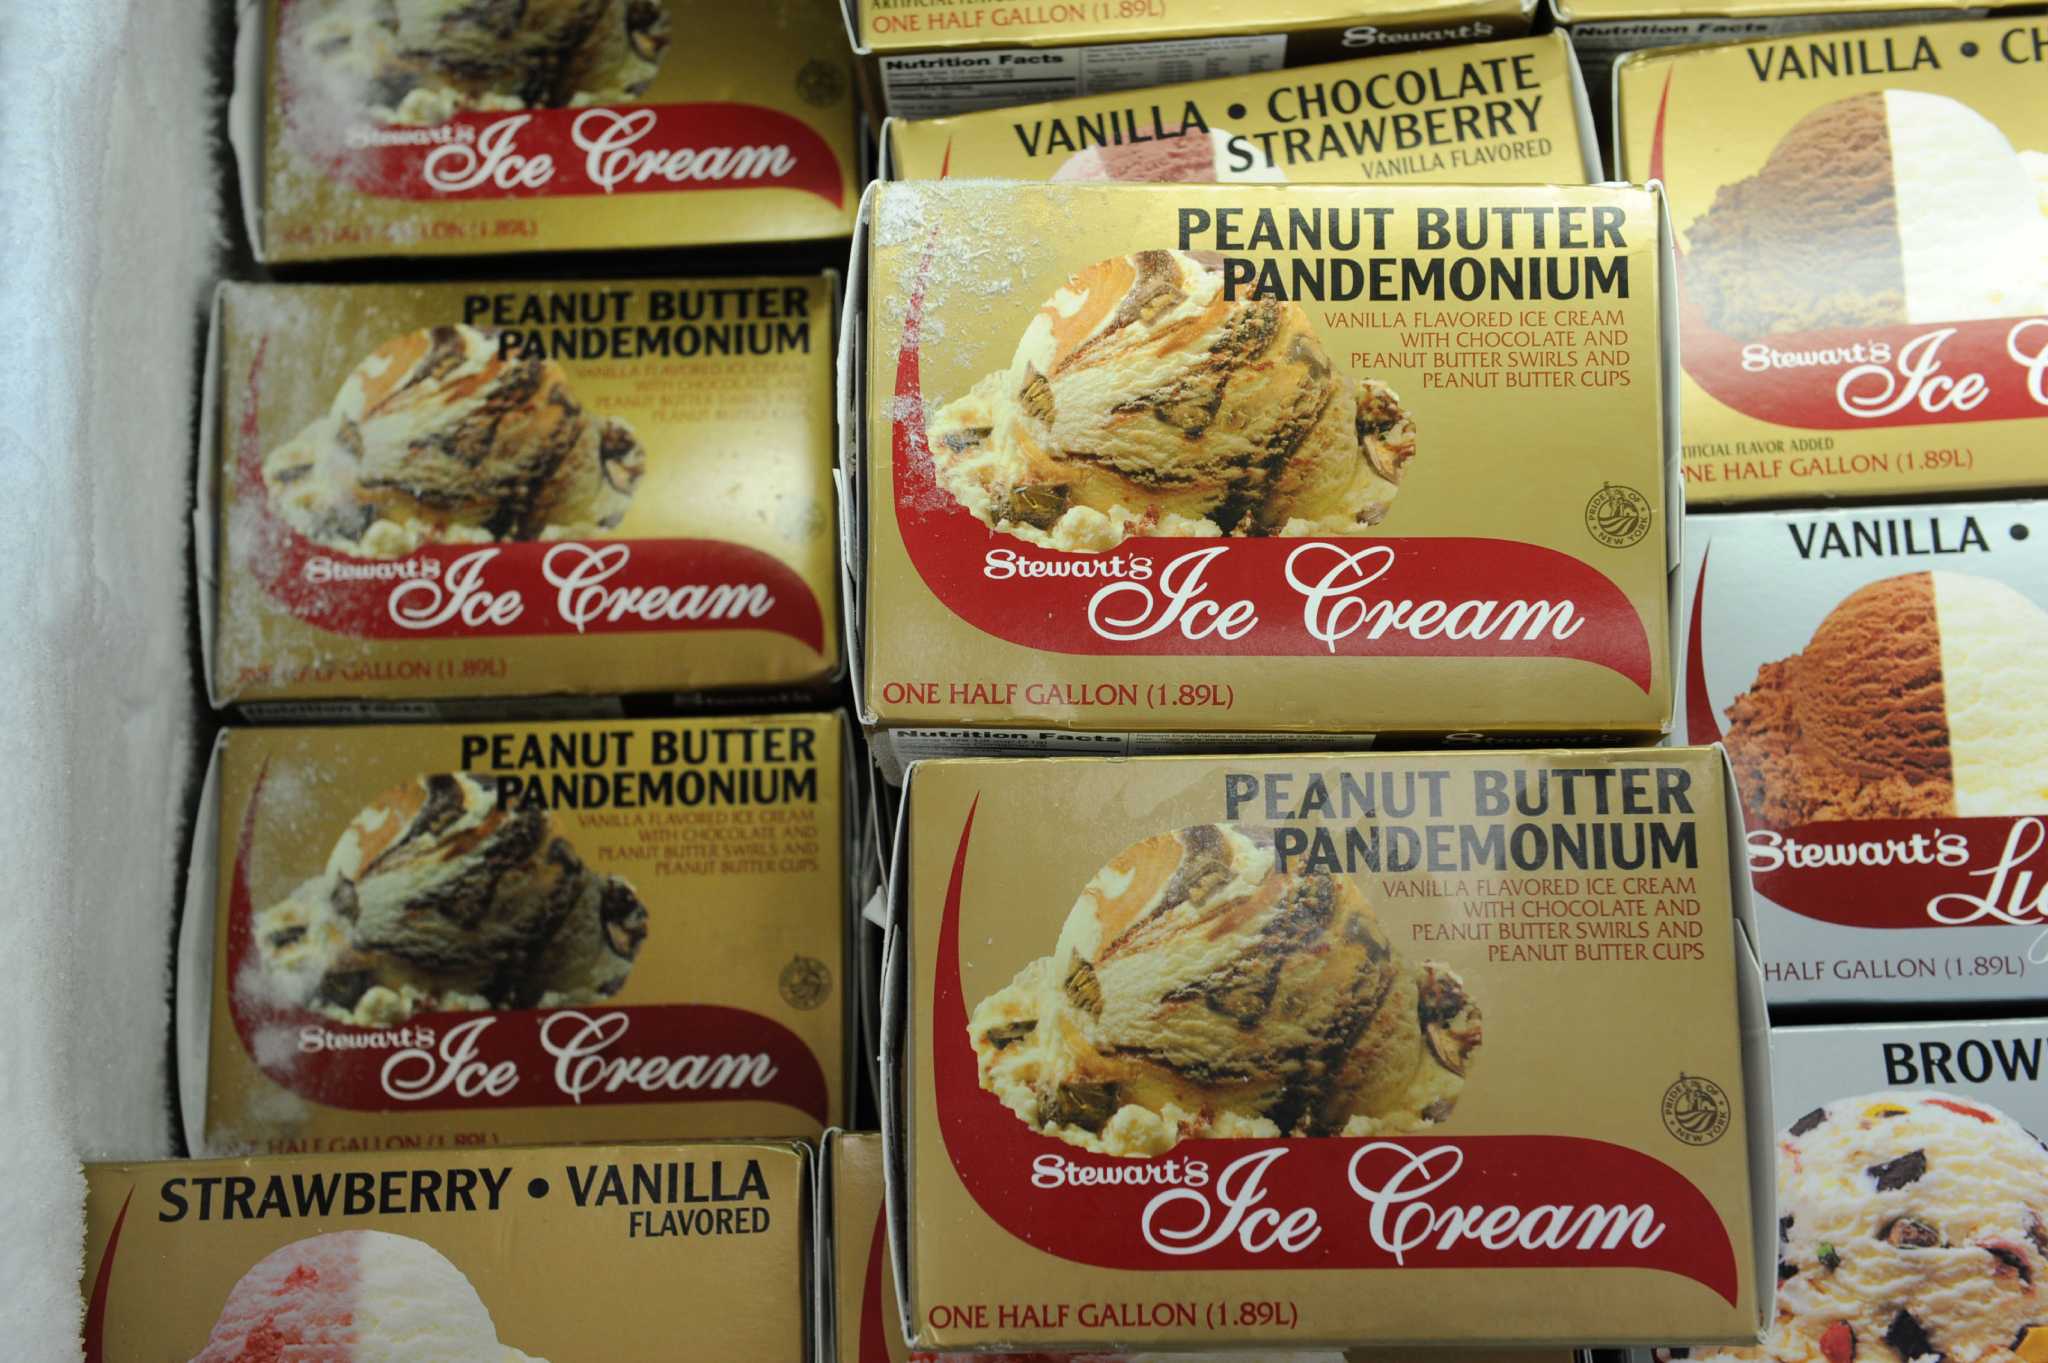 Neapolitan ice cream–flavored M&M's taste test